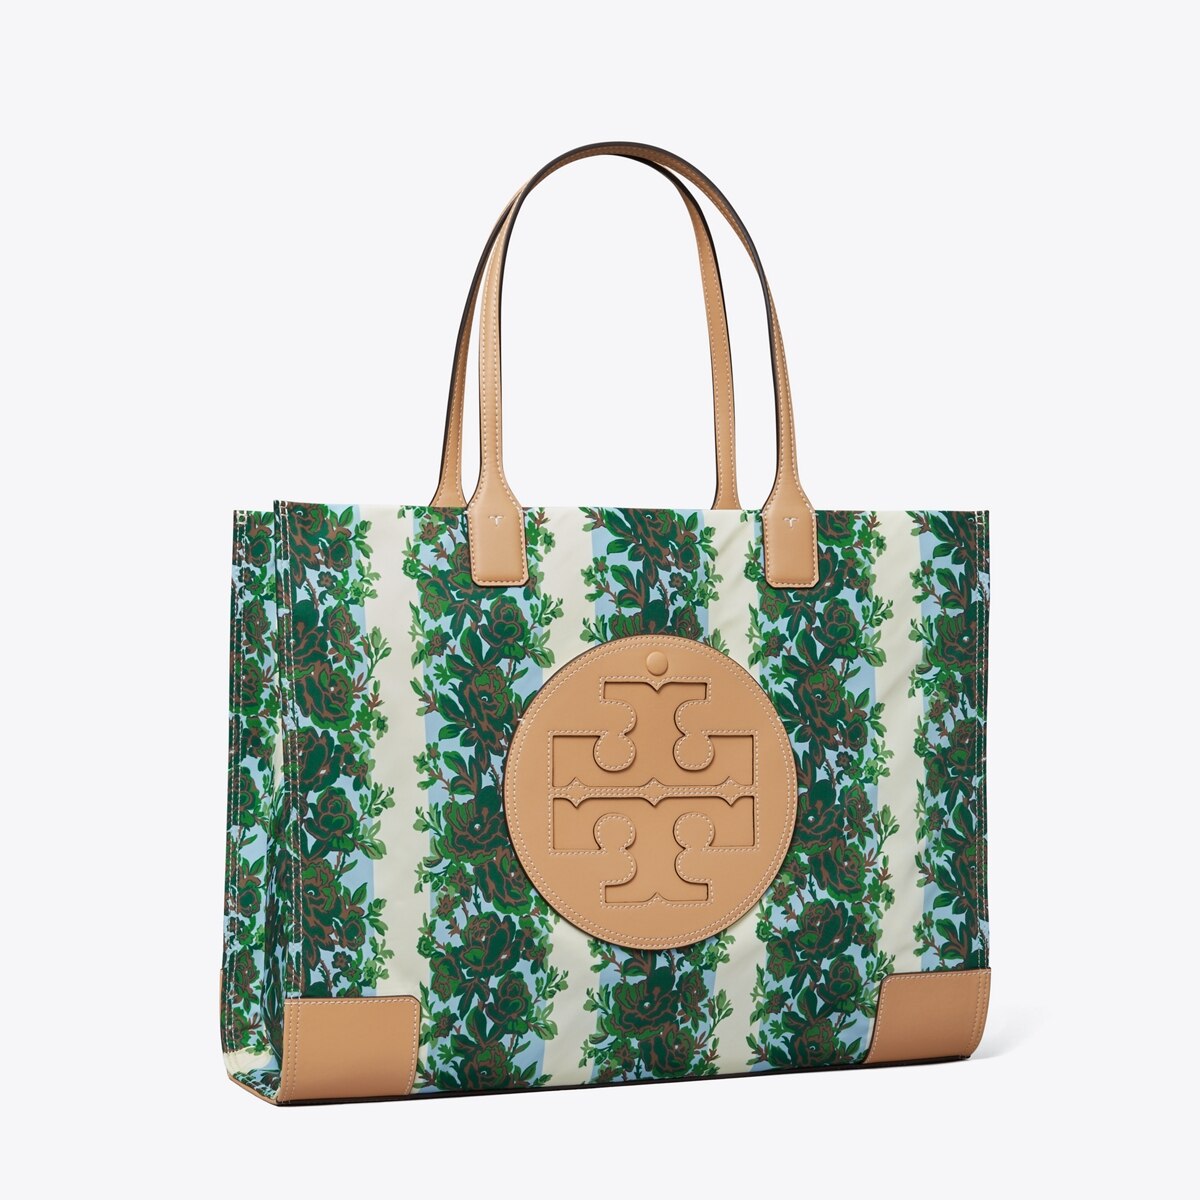 Ella Printed Tote: Women's Handbags | Tote Bags | Tory Burch EU